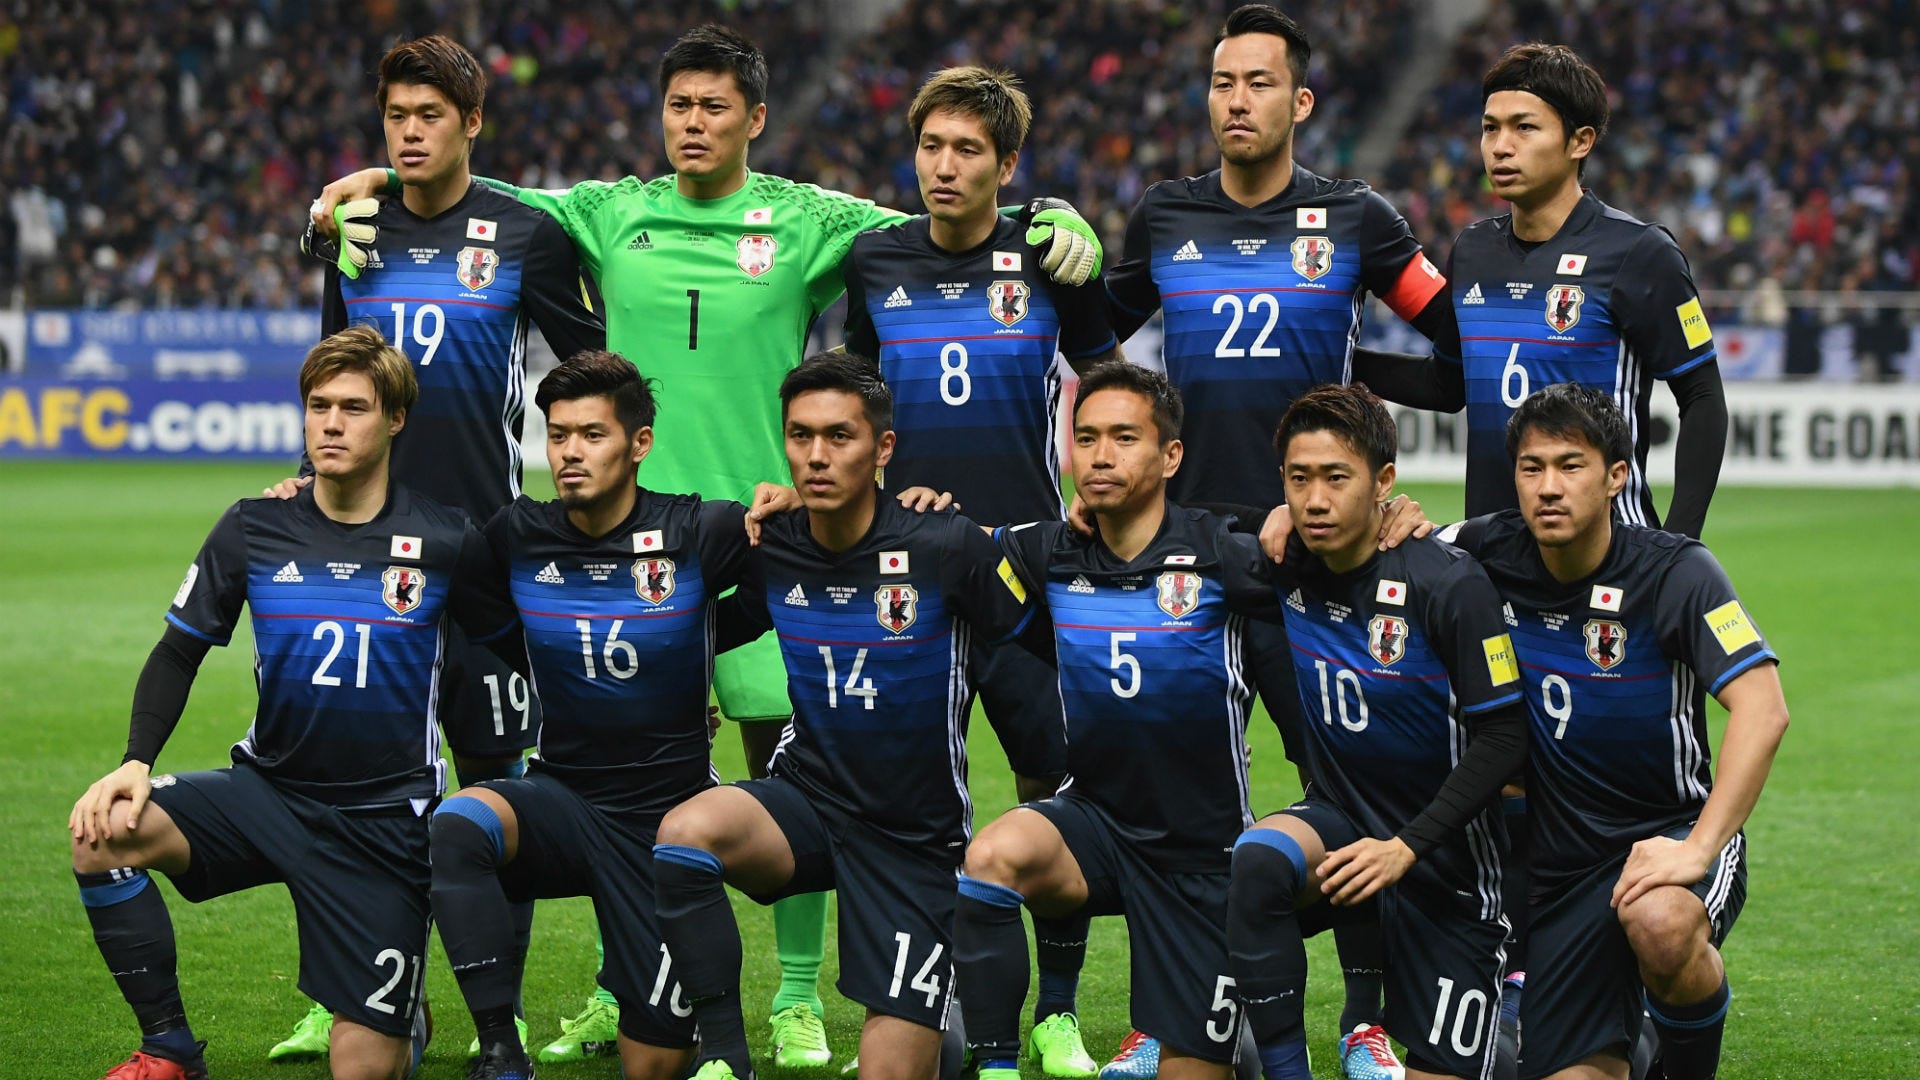 オーストラリア戦に臨む日本代表 Afcがメンバーリストと背番号を掲載 柴崎は7番に Goal Com 日本